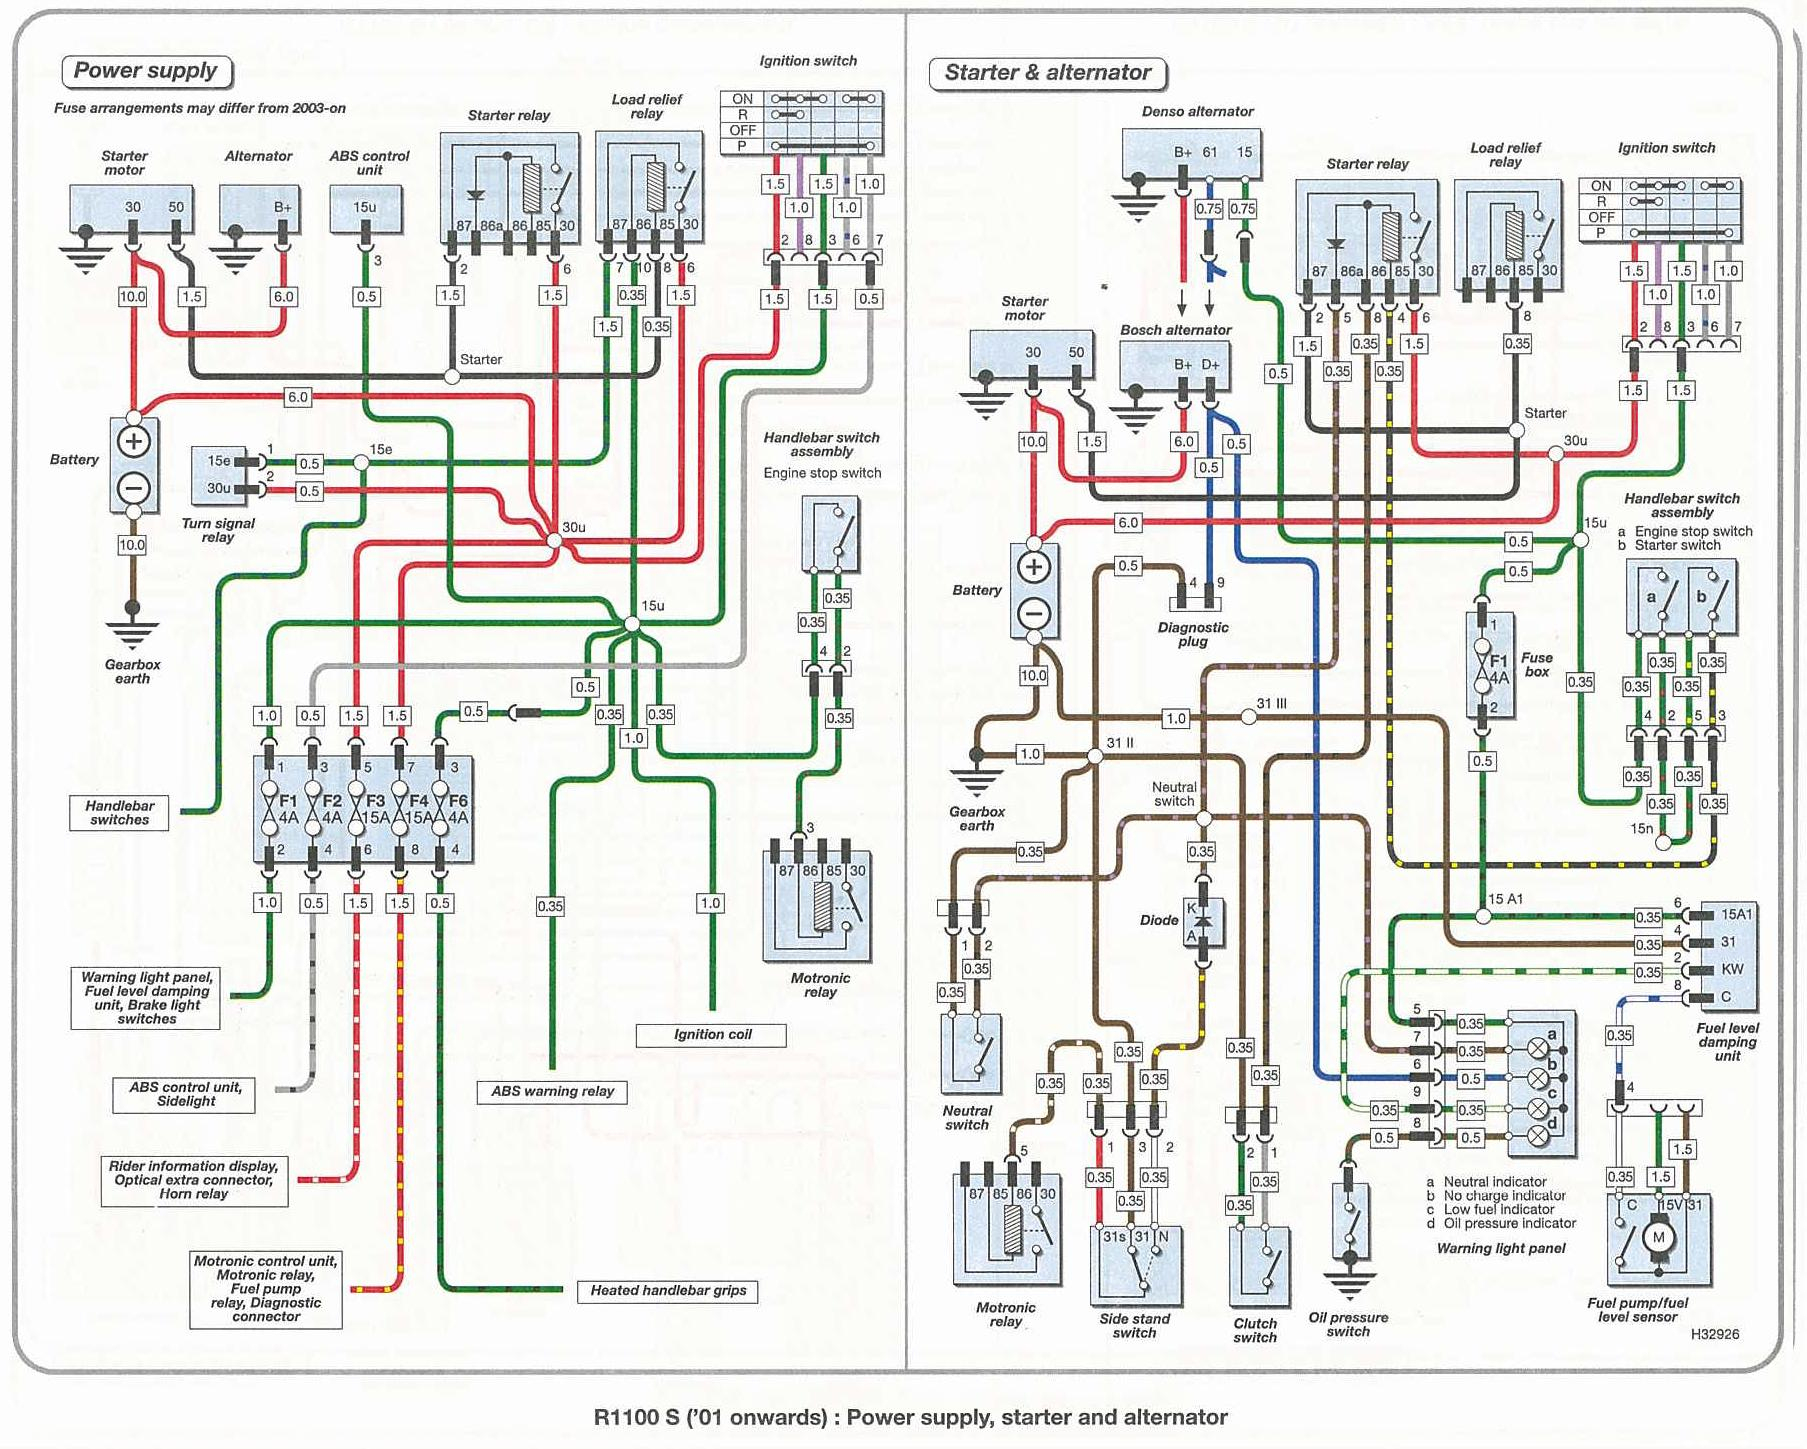 1976 Bmw 02 Wiring Diagram - Wiring Diagrams Hubs - Bmw Wiring Diagram